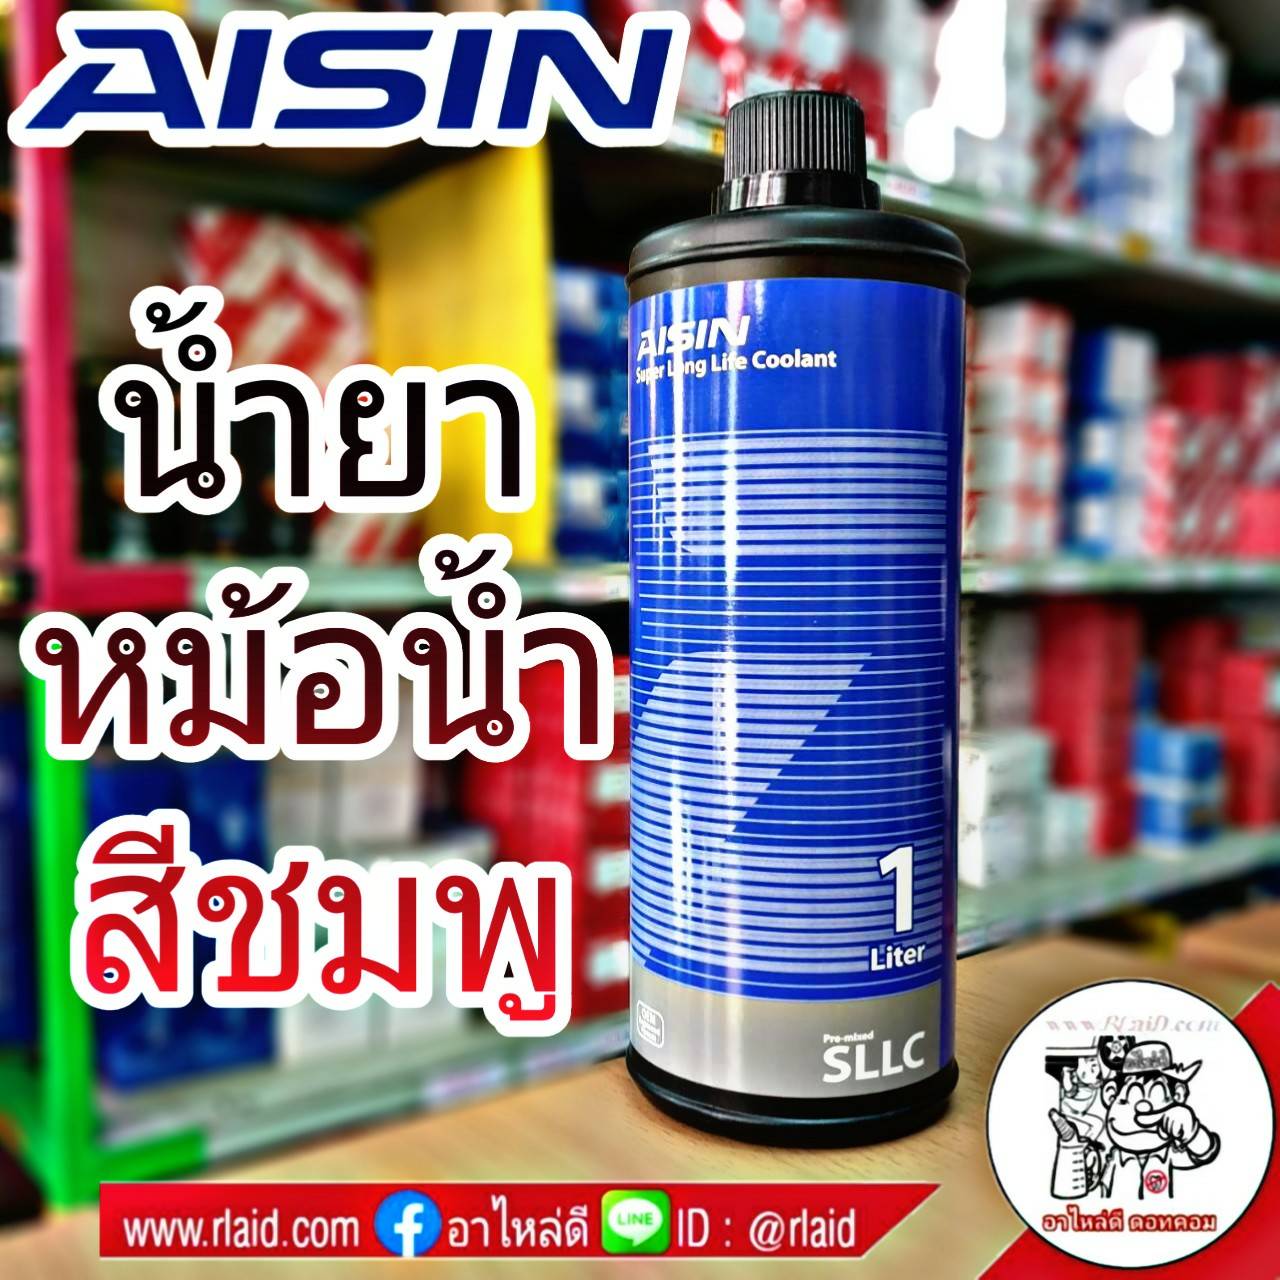 ส่งฟรี!! .... AISIN คูลแลนท์ ไอซิน สีชมพู 1ลิตร น้ำยาหม้อน้ำ น้ำยาเติมหม้อน้ำ น้ำยาหล่อเย็น Coolant